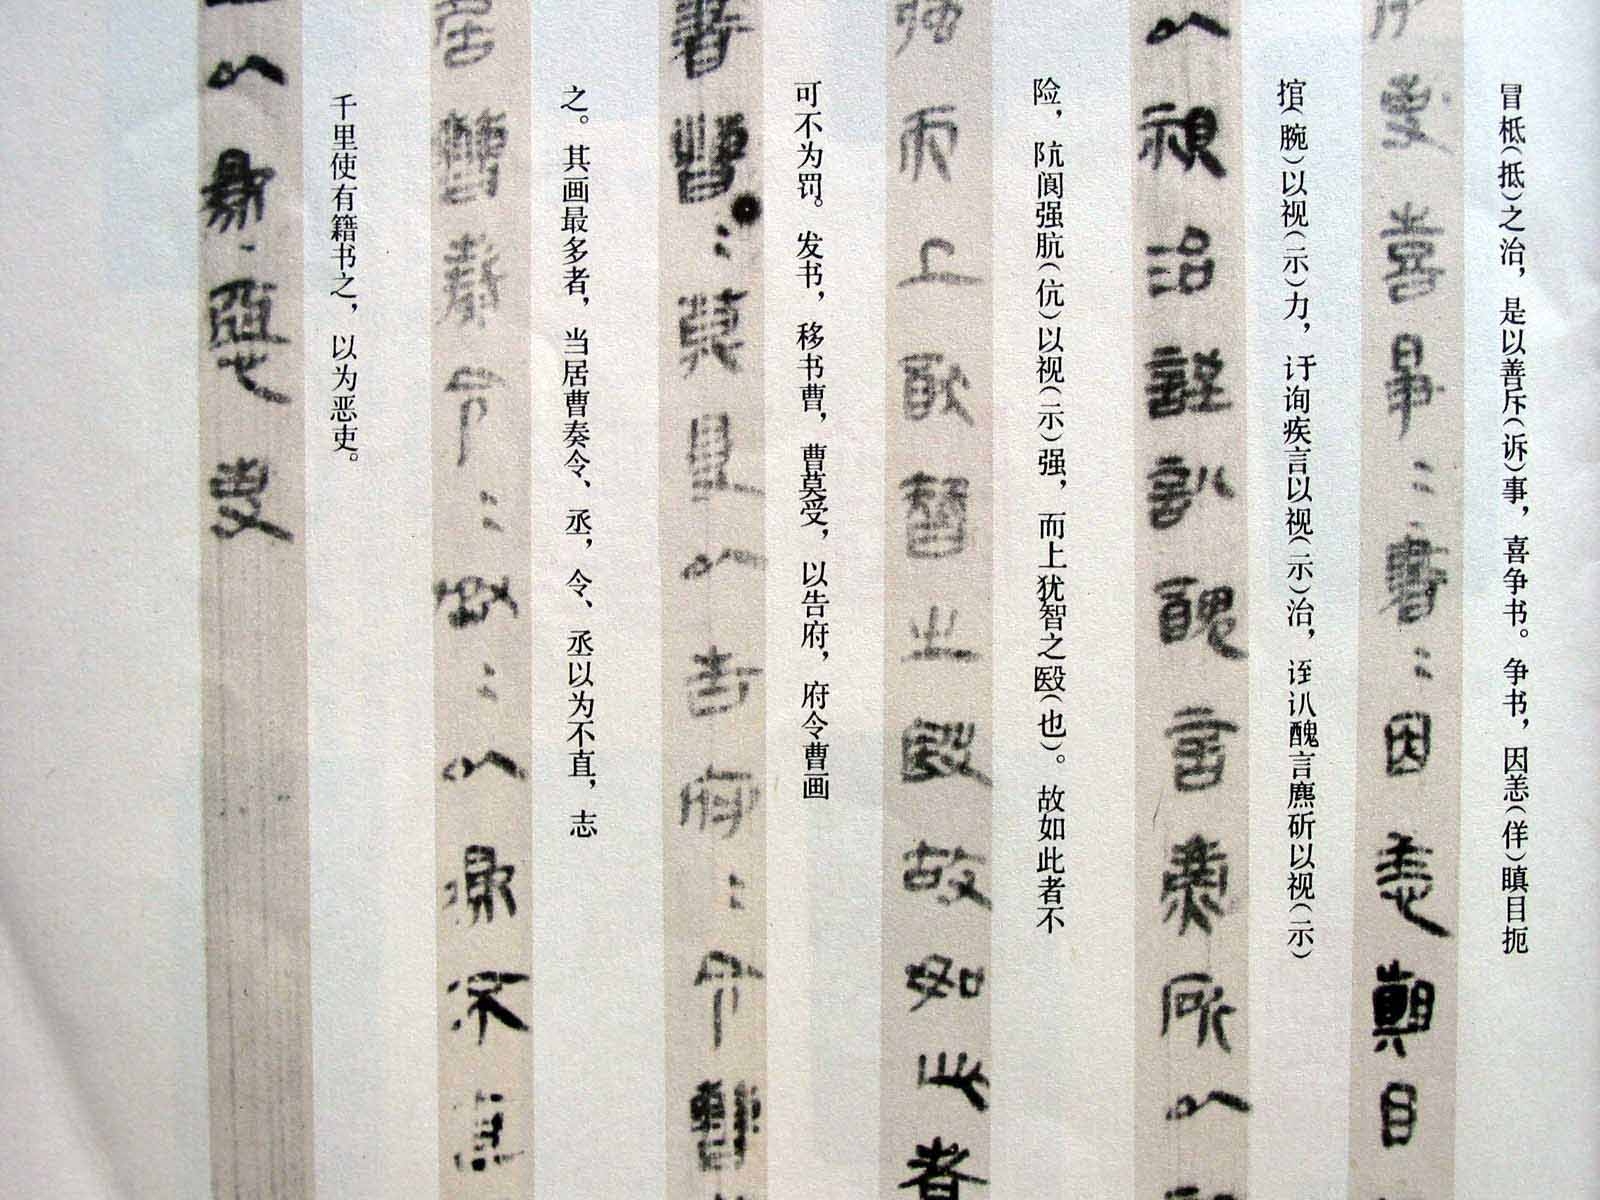 中国的字体都出自什么朝代?